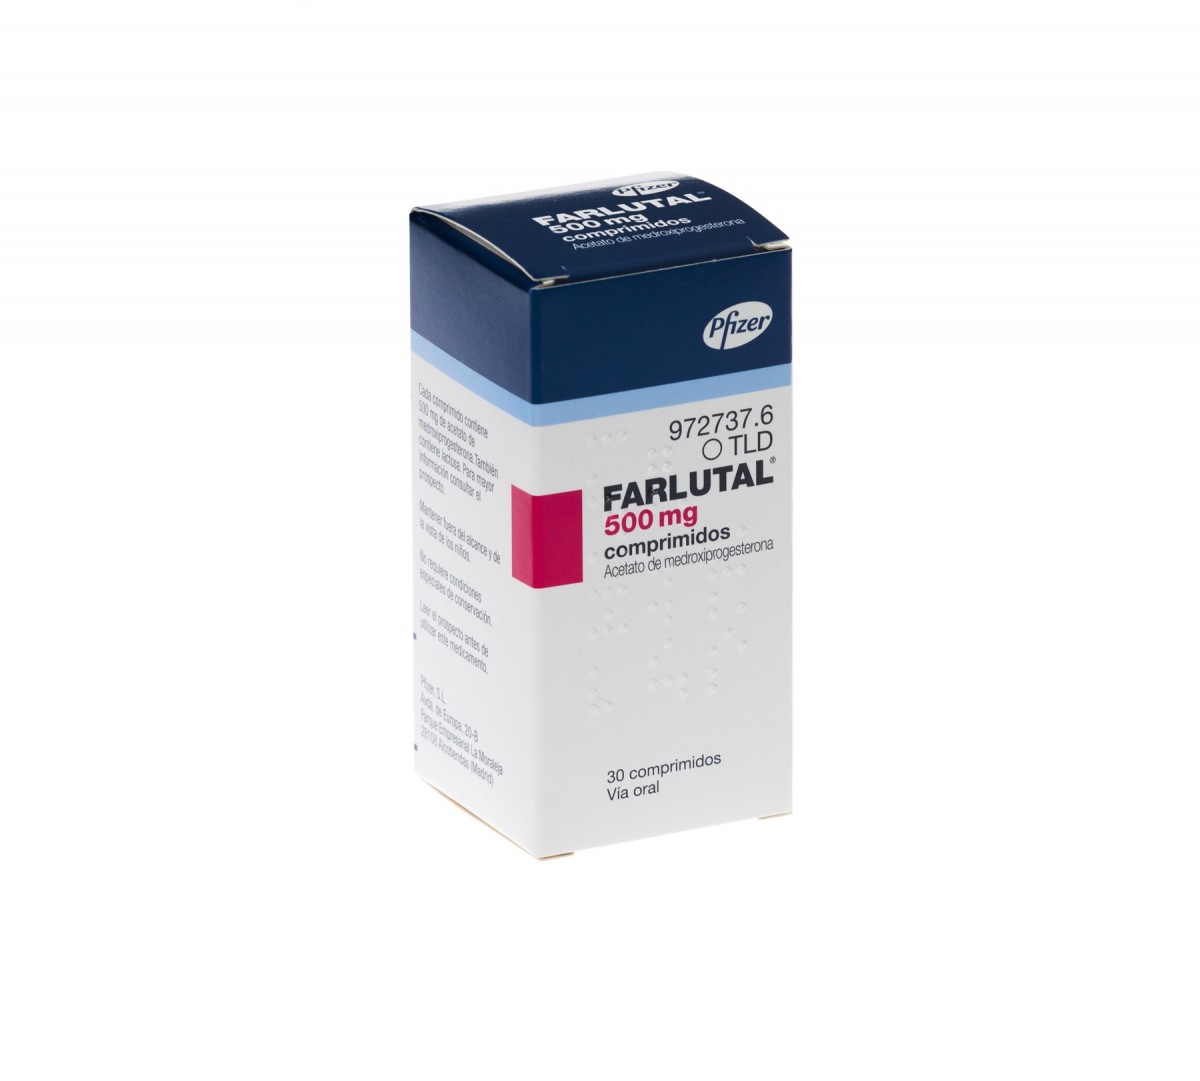 FARLUTAL 500 mg COMPRIMIDOS , 30 comprimidos fotografía del envase.